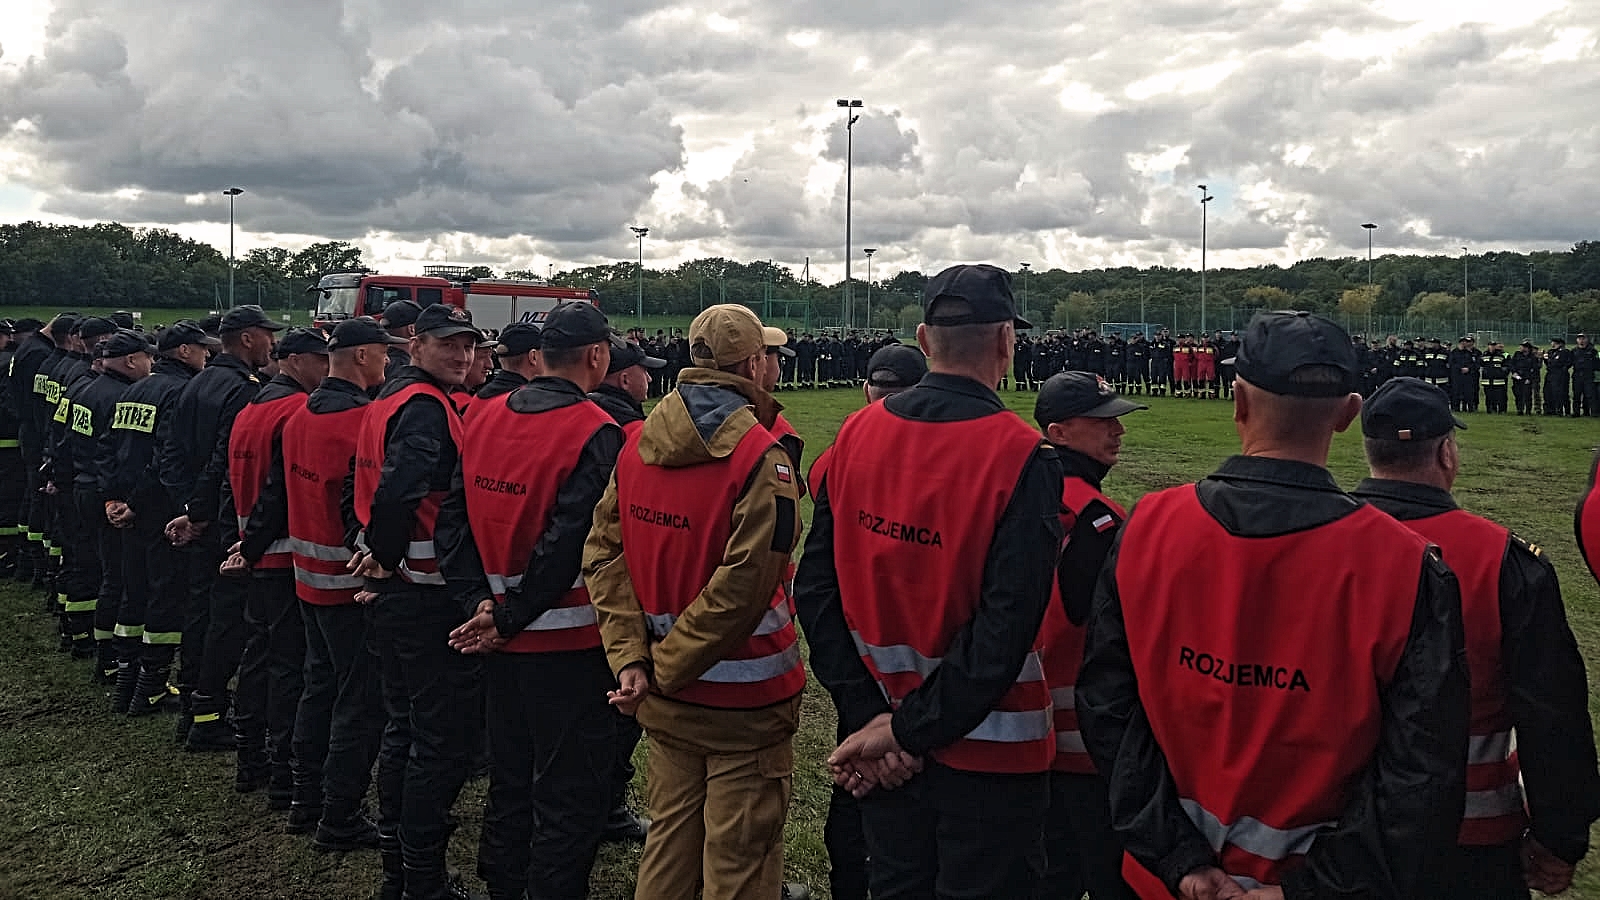 Uczestnicy ćwiczeń stojący na zbiórce podsumowującej manewry. Na pierwszym planie strażacy stojący w dwuszeregu w kamizelkach z napisem "Rozjemca".